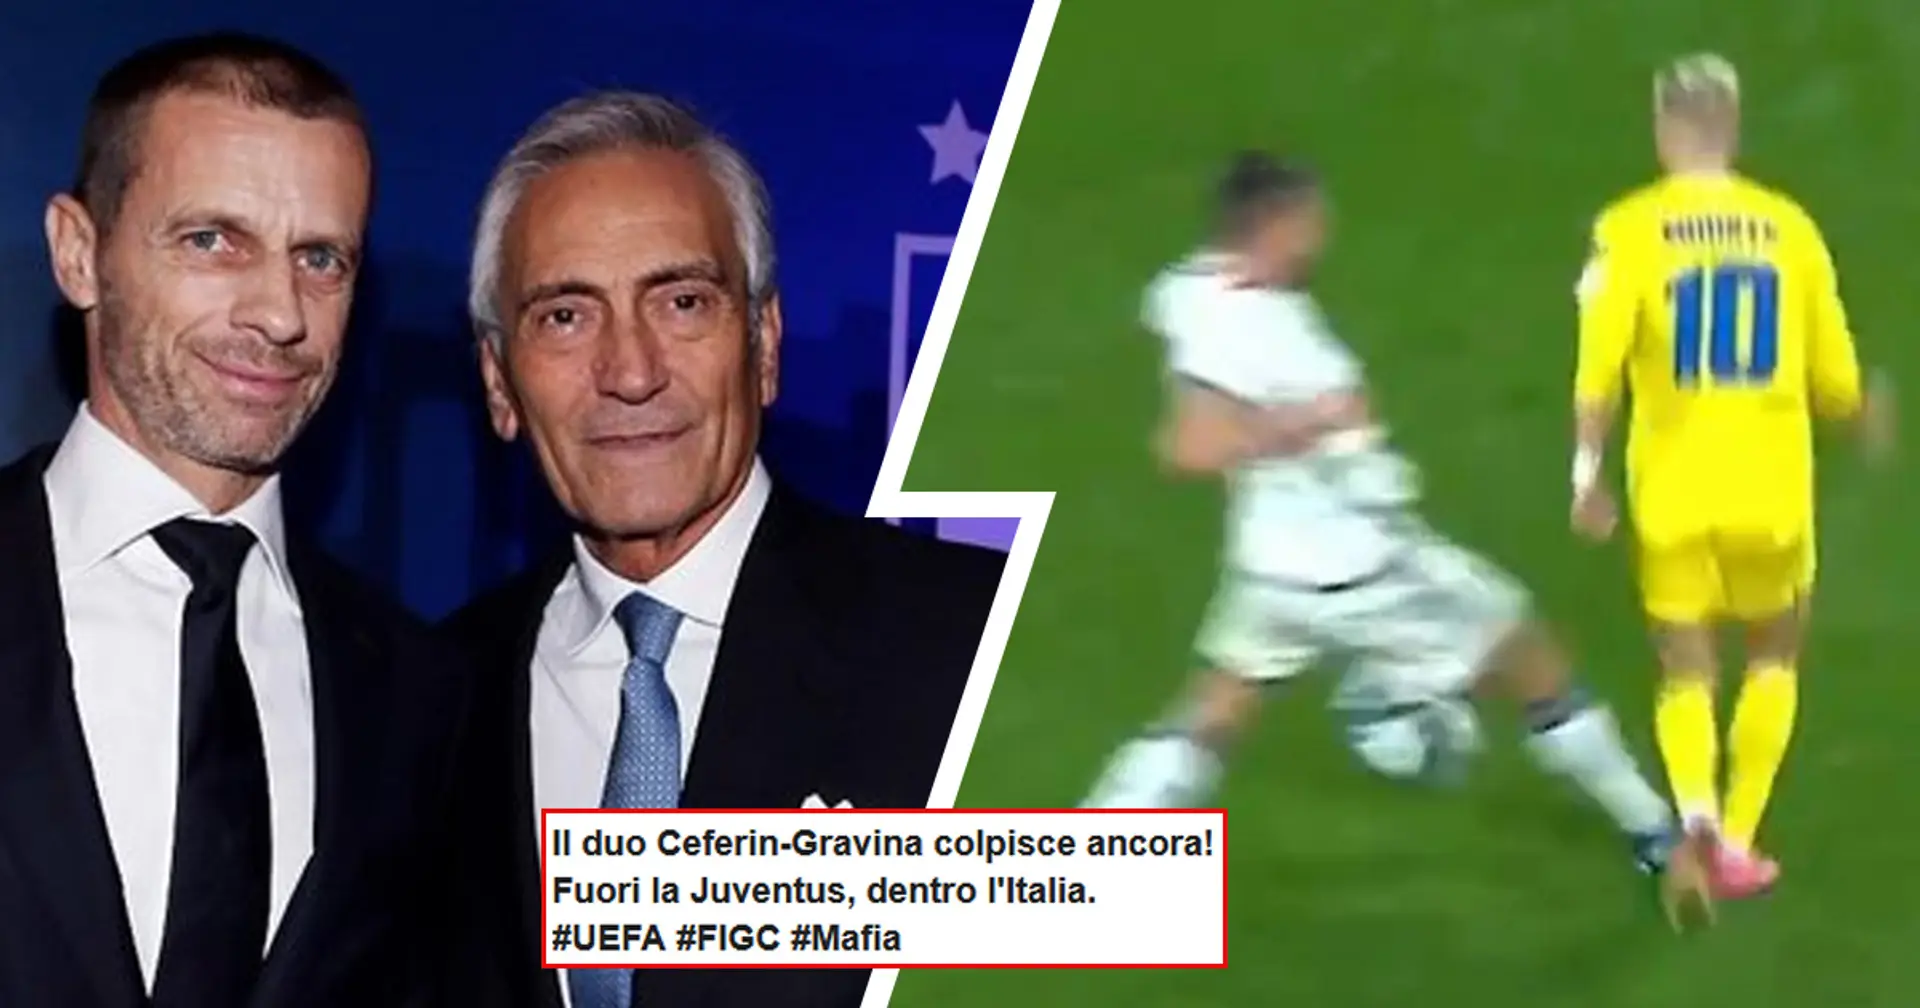 L'Italia vola a EURO24, rigore netto non dato contro, i tifosi pungono Gravina e Ceferin: "Essere vicepres. UEFA serve"